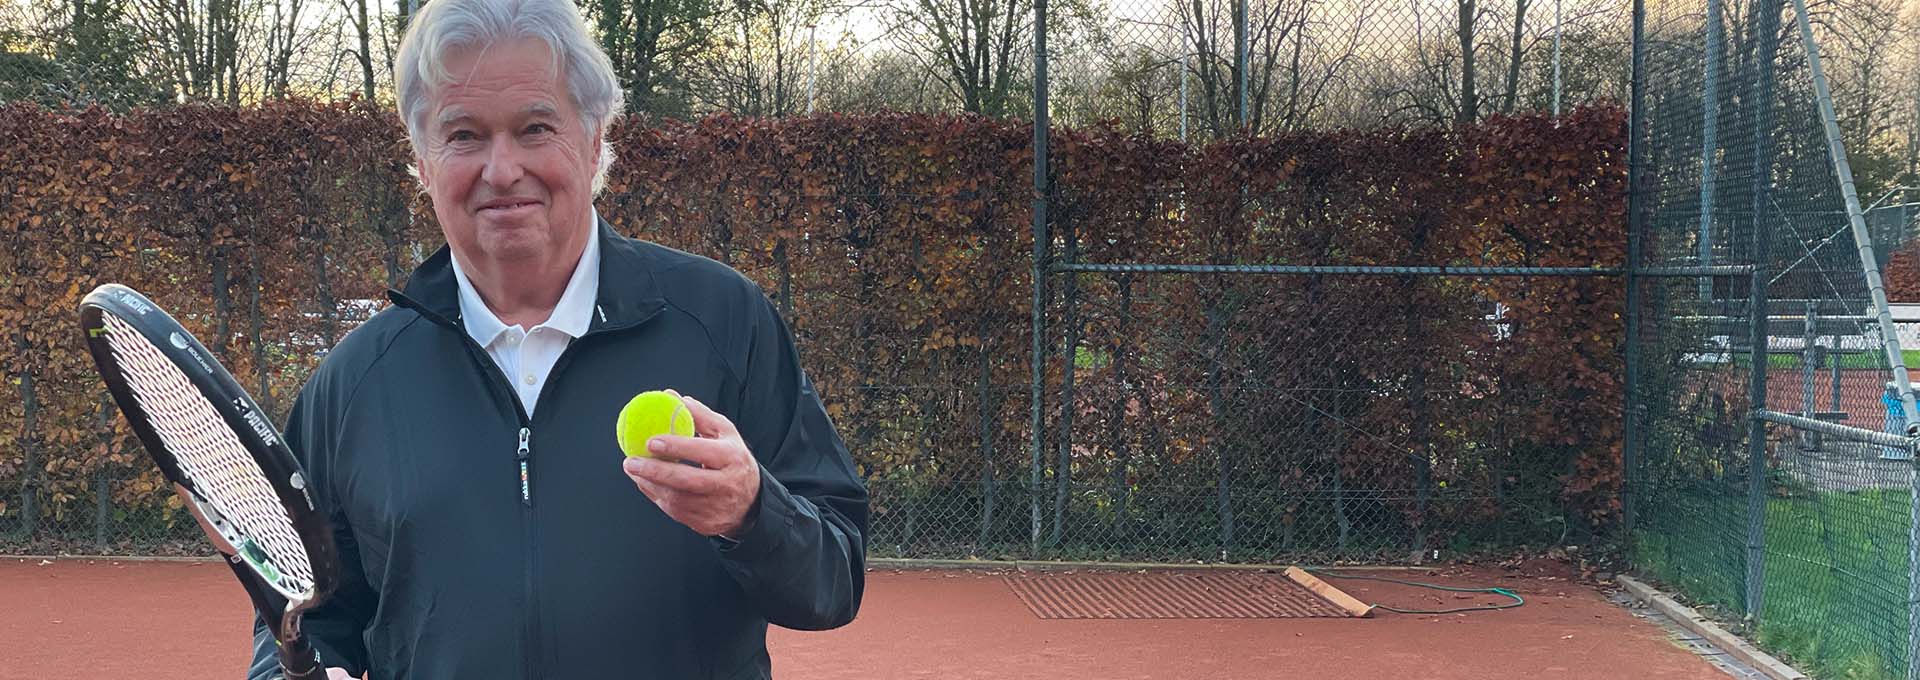 Utilisateur d'une aide auditive Bernafon Alpha (homme) avec une balle de tennis et une raquette en main sur un court regardant la caméra, prêt à jouer.